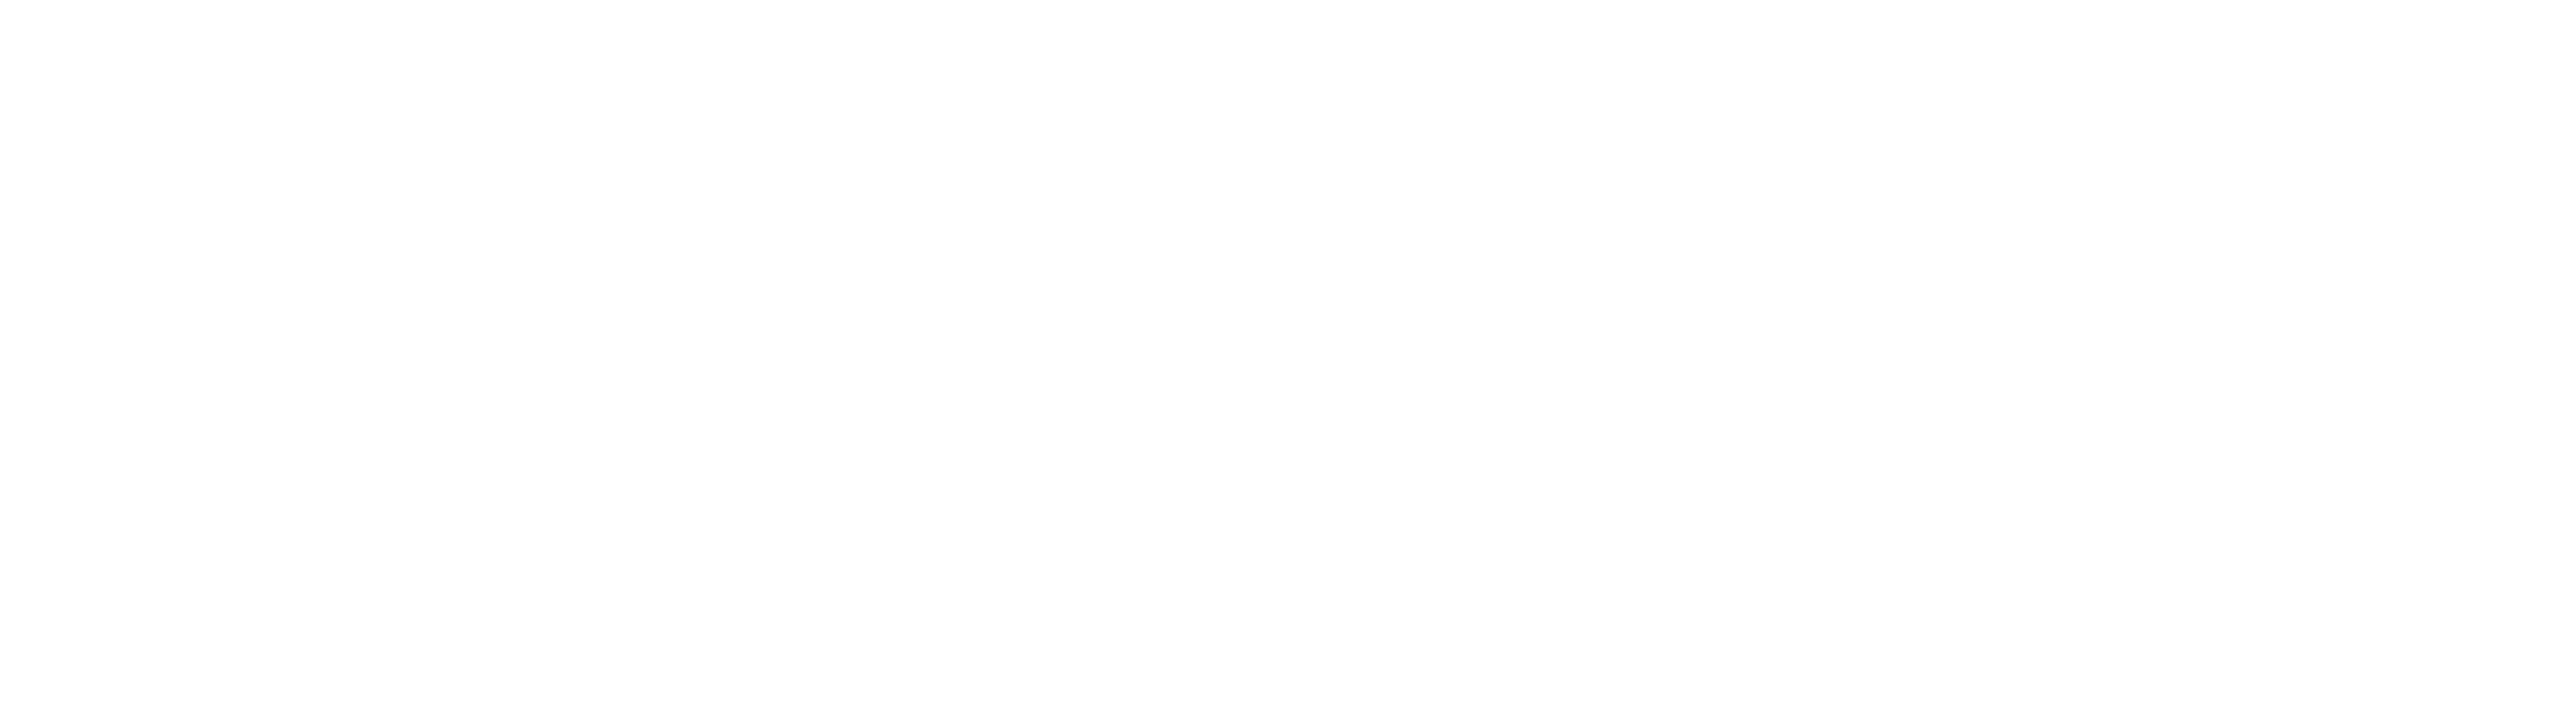 Sustainable U.S. Peanuts